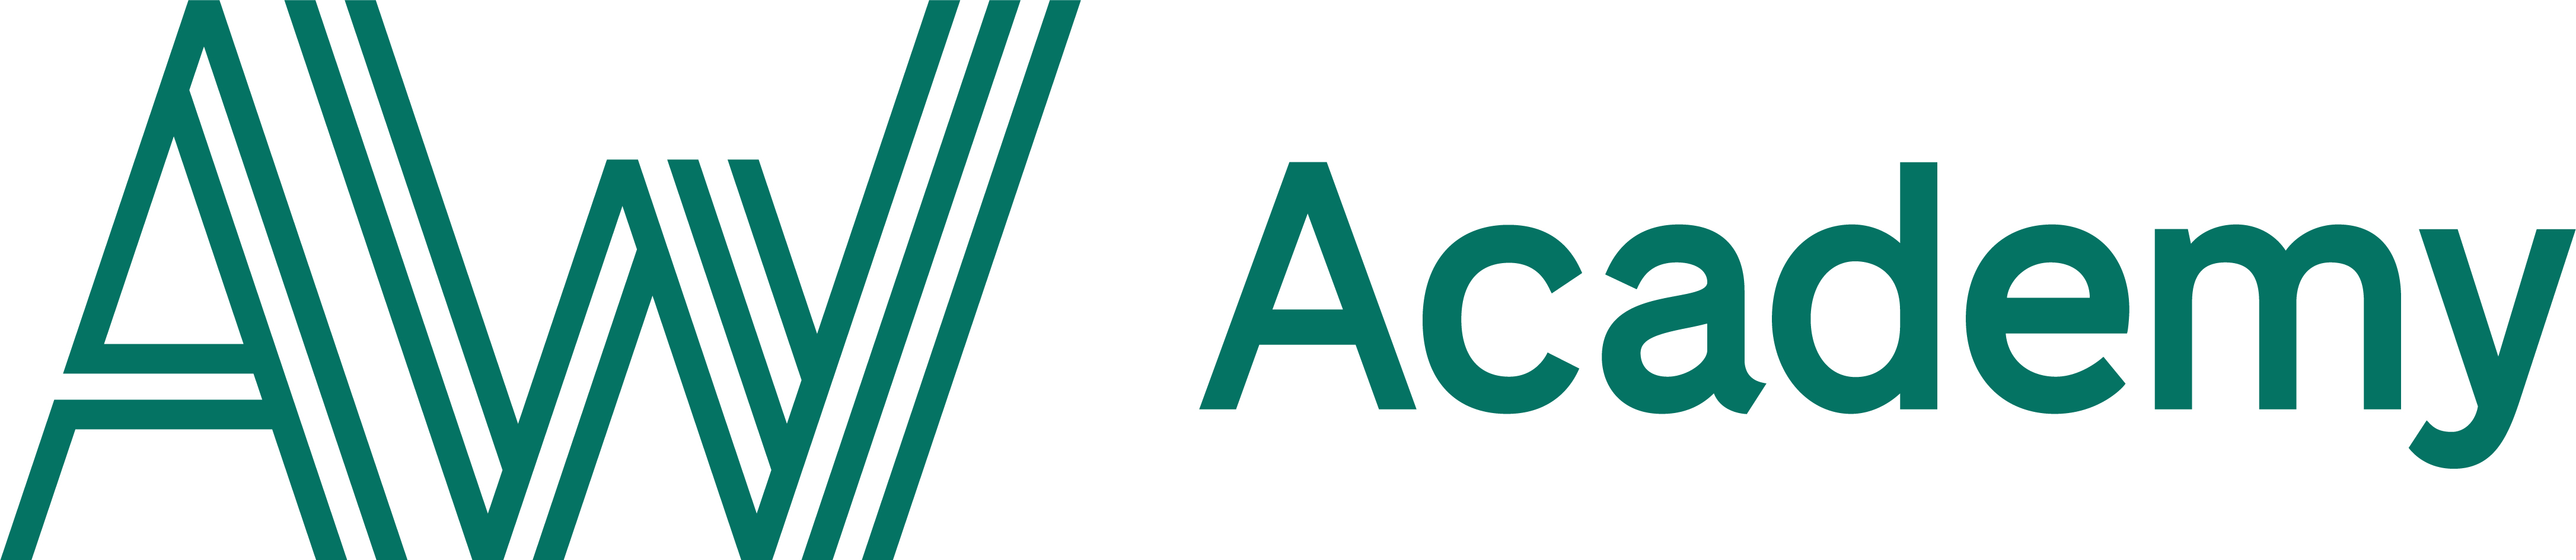 AW Academy Germany GmbH Logo